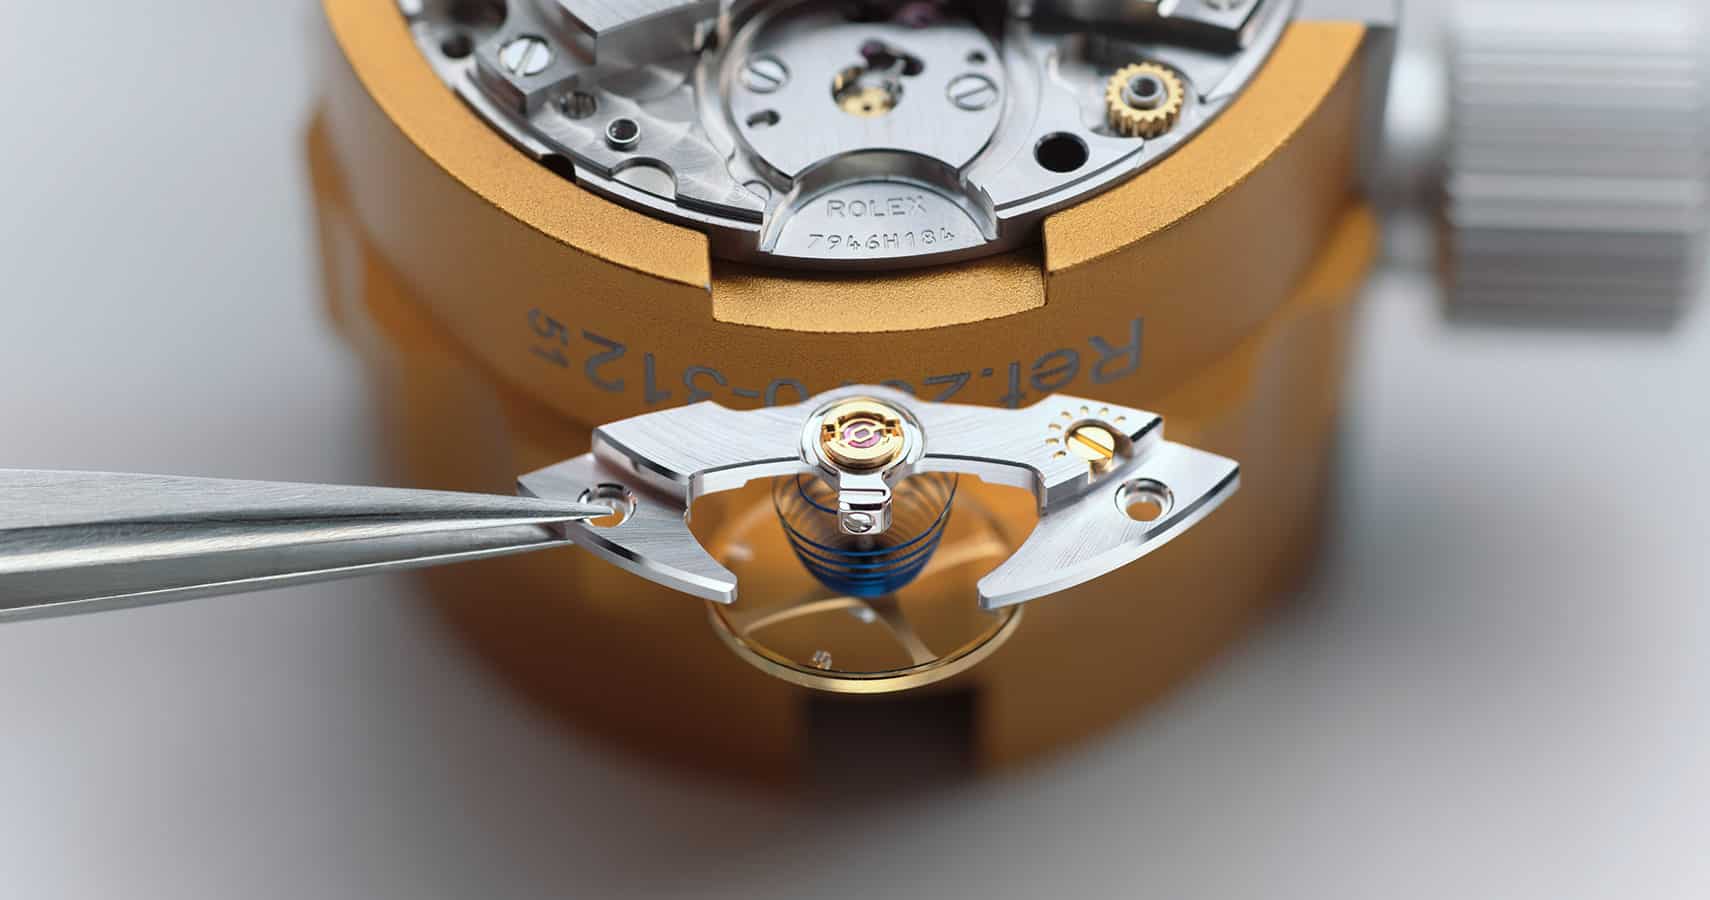 Rolex watch being assembled